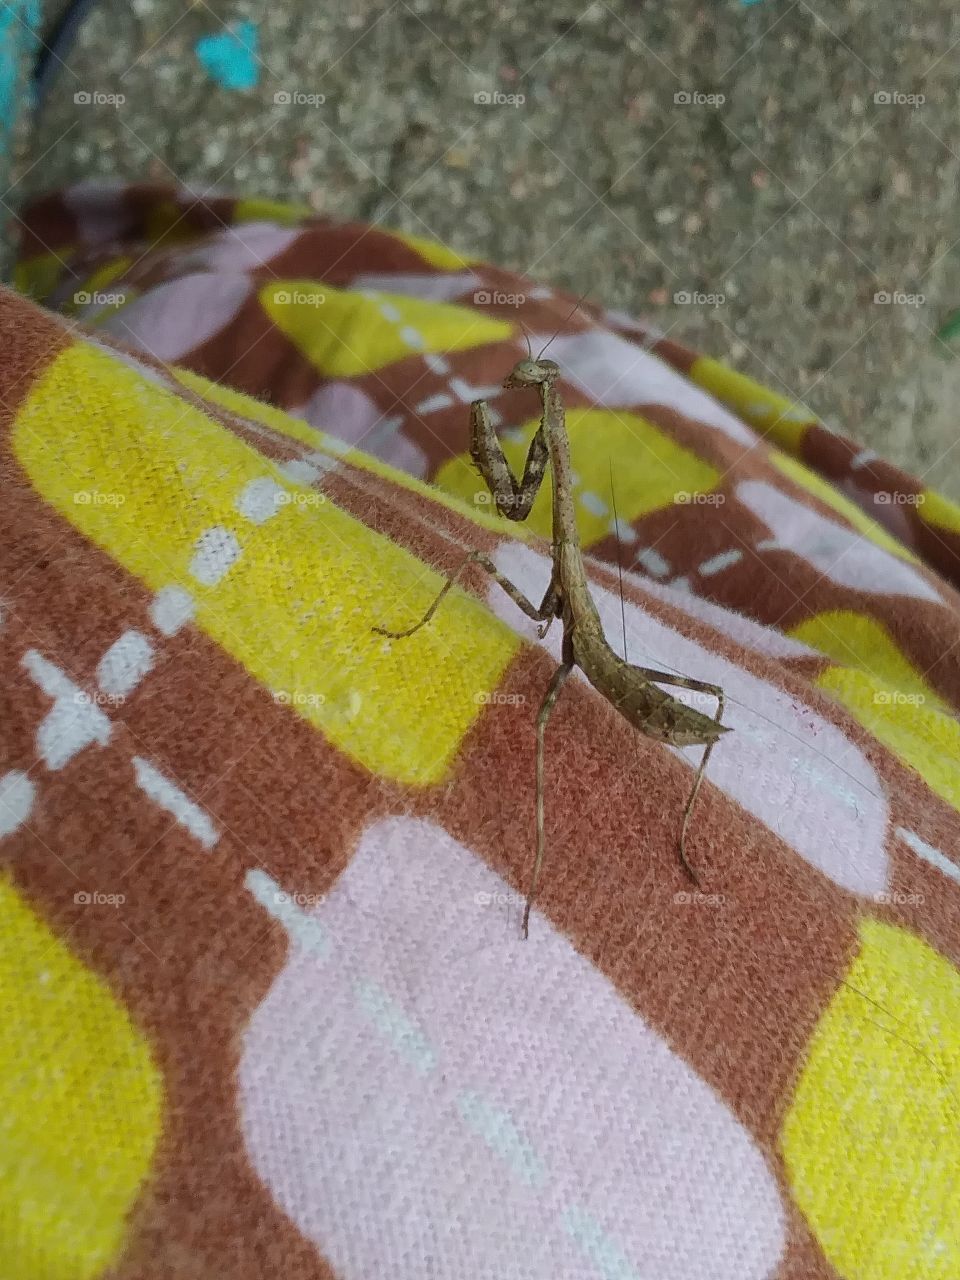 praying mantis on my pj.s